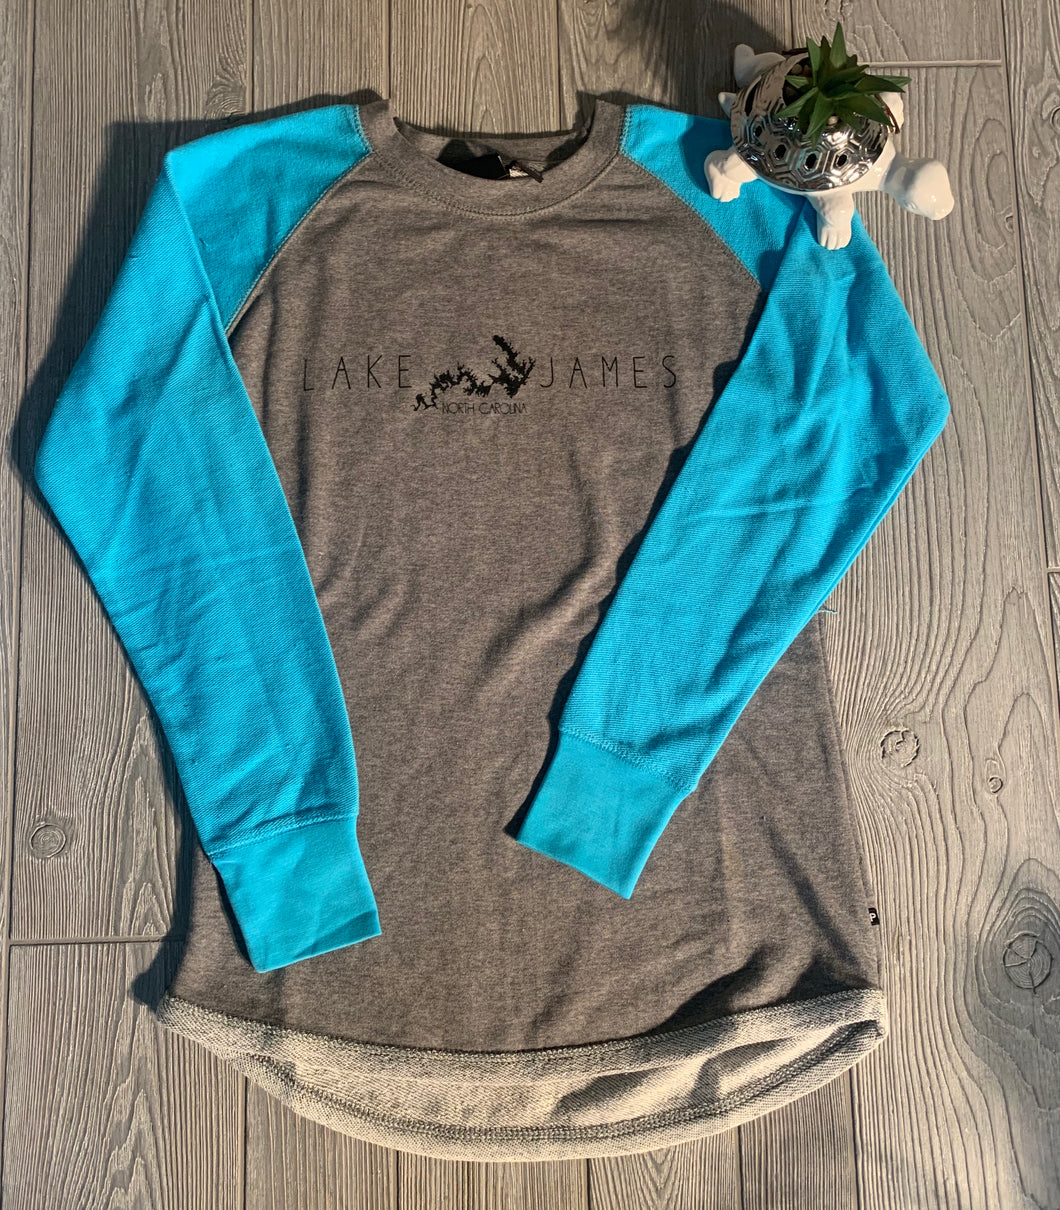 Ladies Lake James Crewneck Sweatshirt with colored sleeves